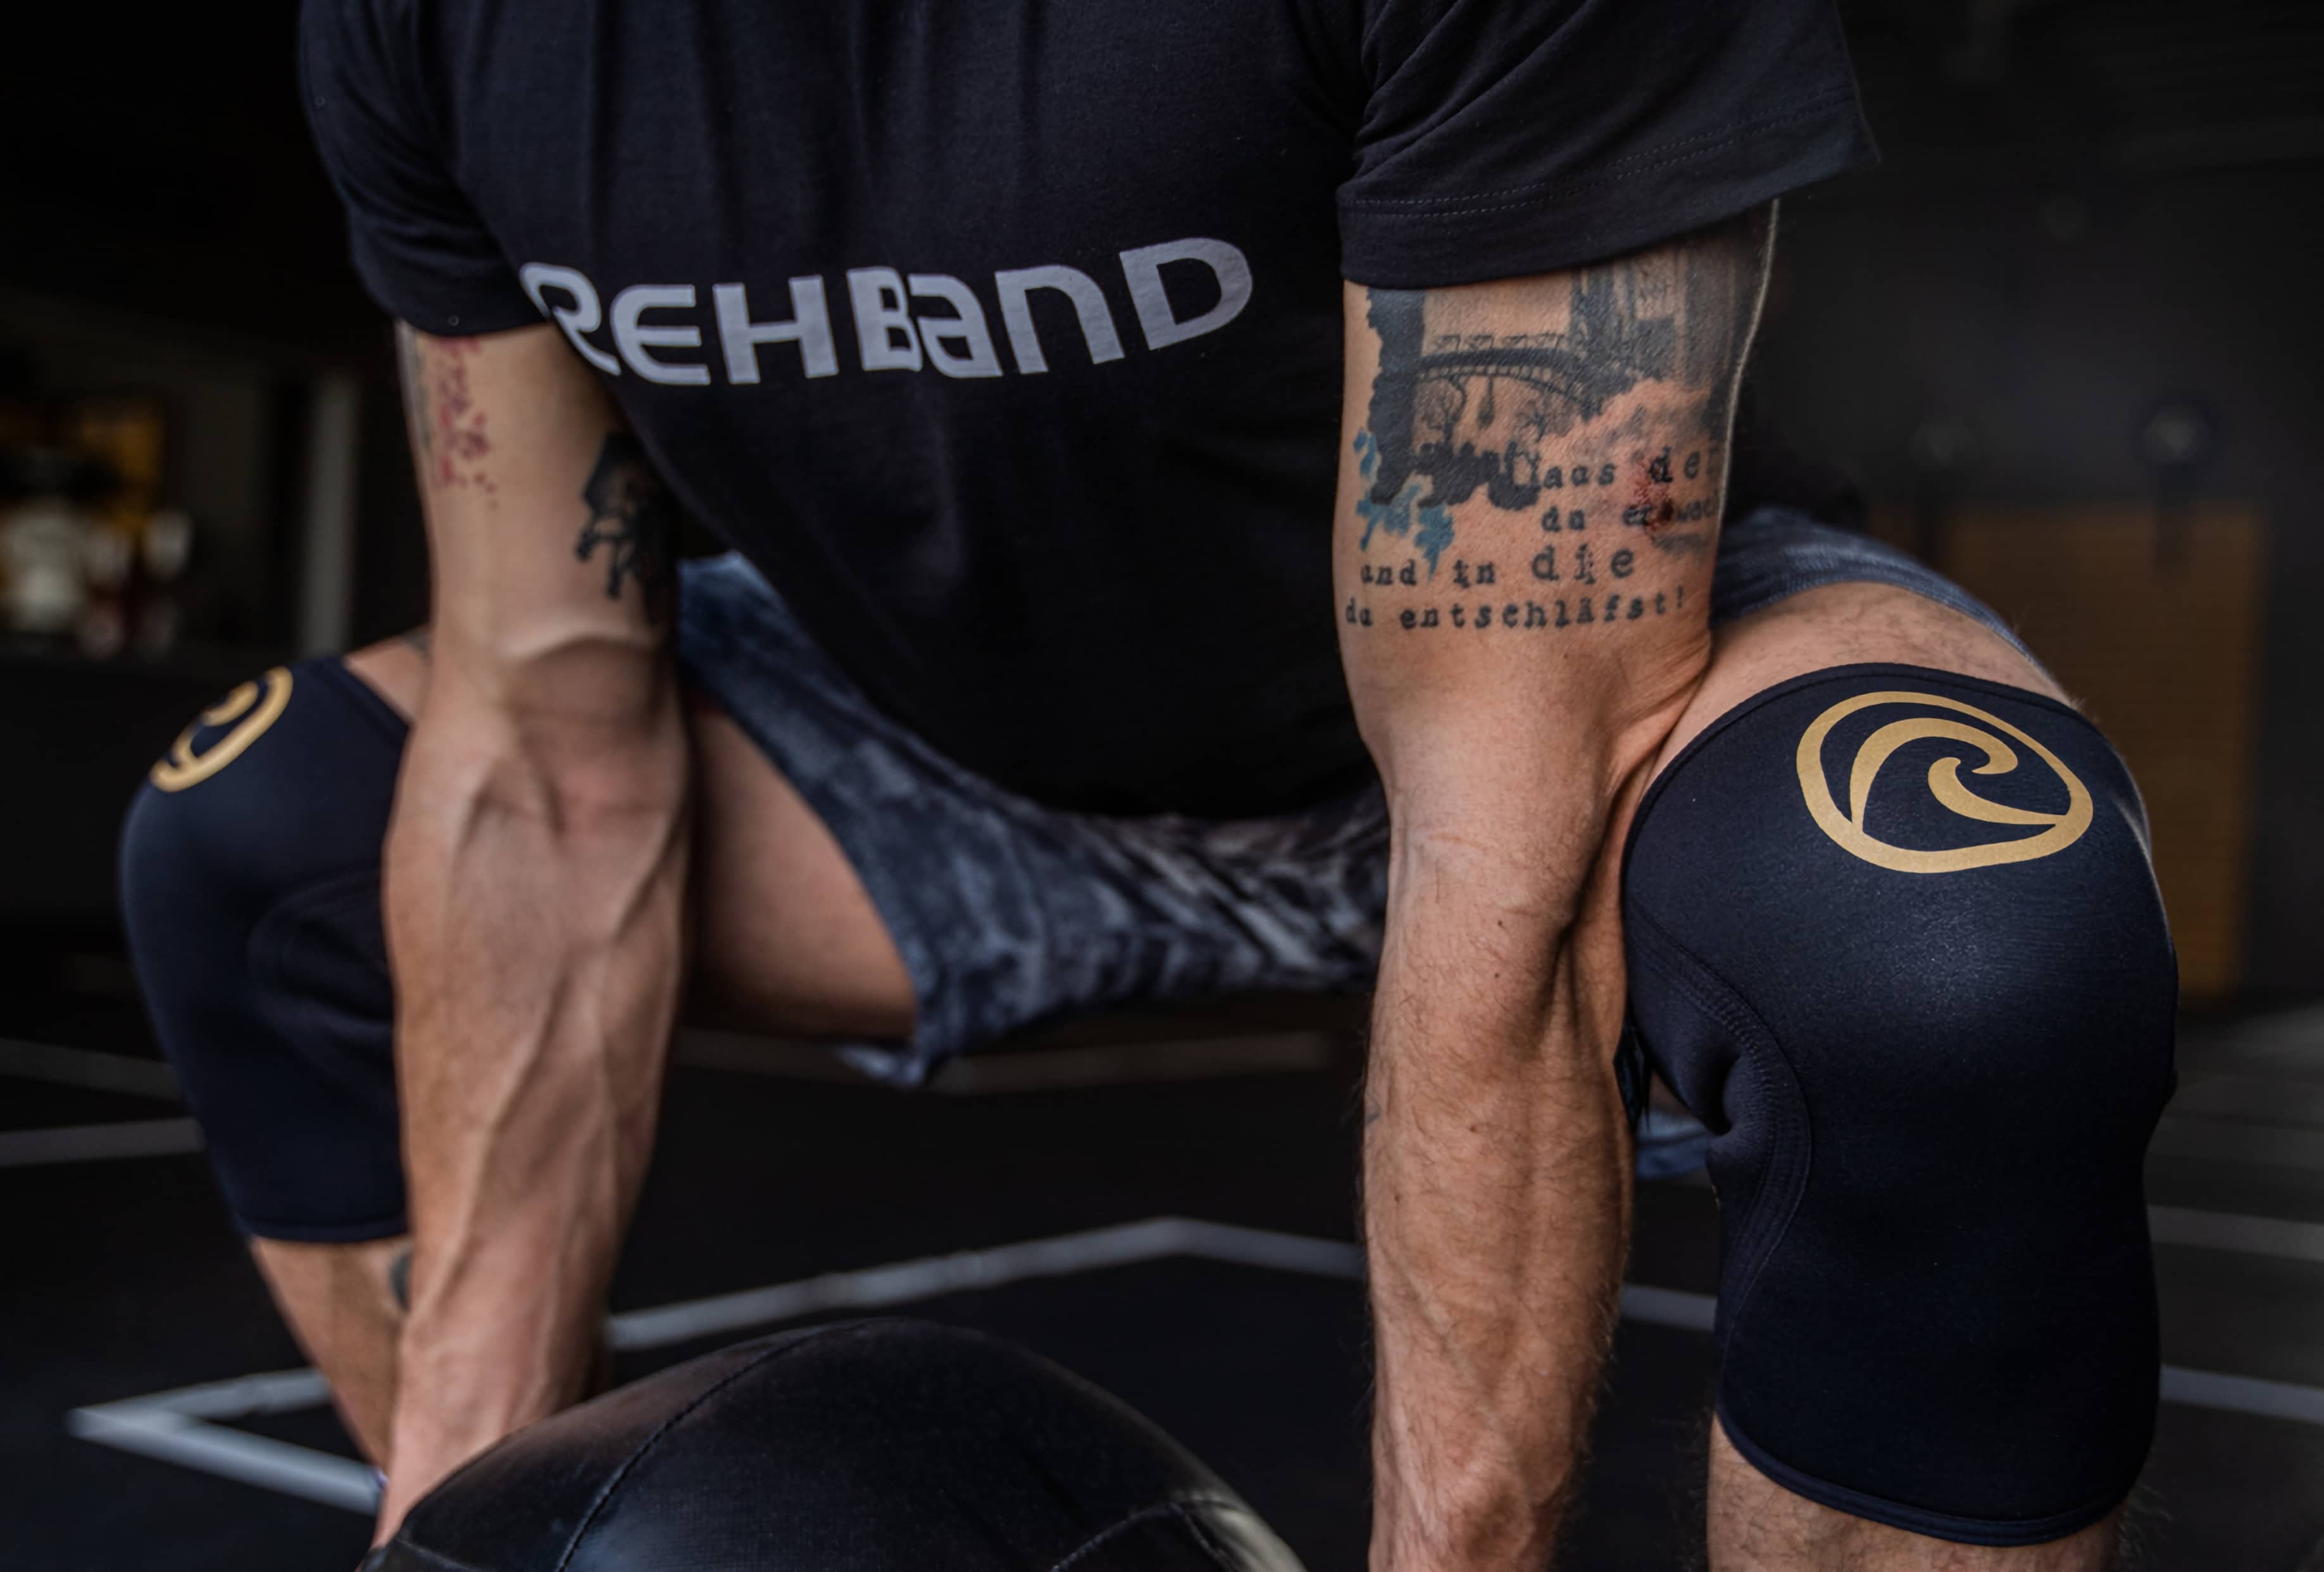 Rehband - Logpart levererar tredjepartslogistik till Rehband. I bild en man men Rehband t-shirt som gör ett marklyft med en medicinboll.